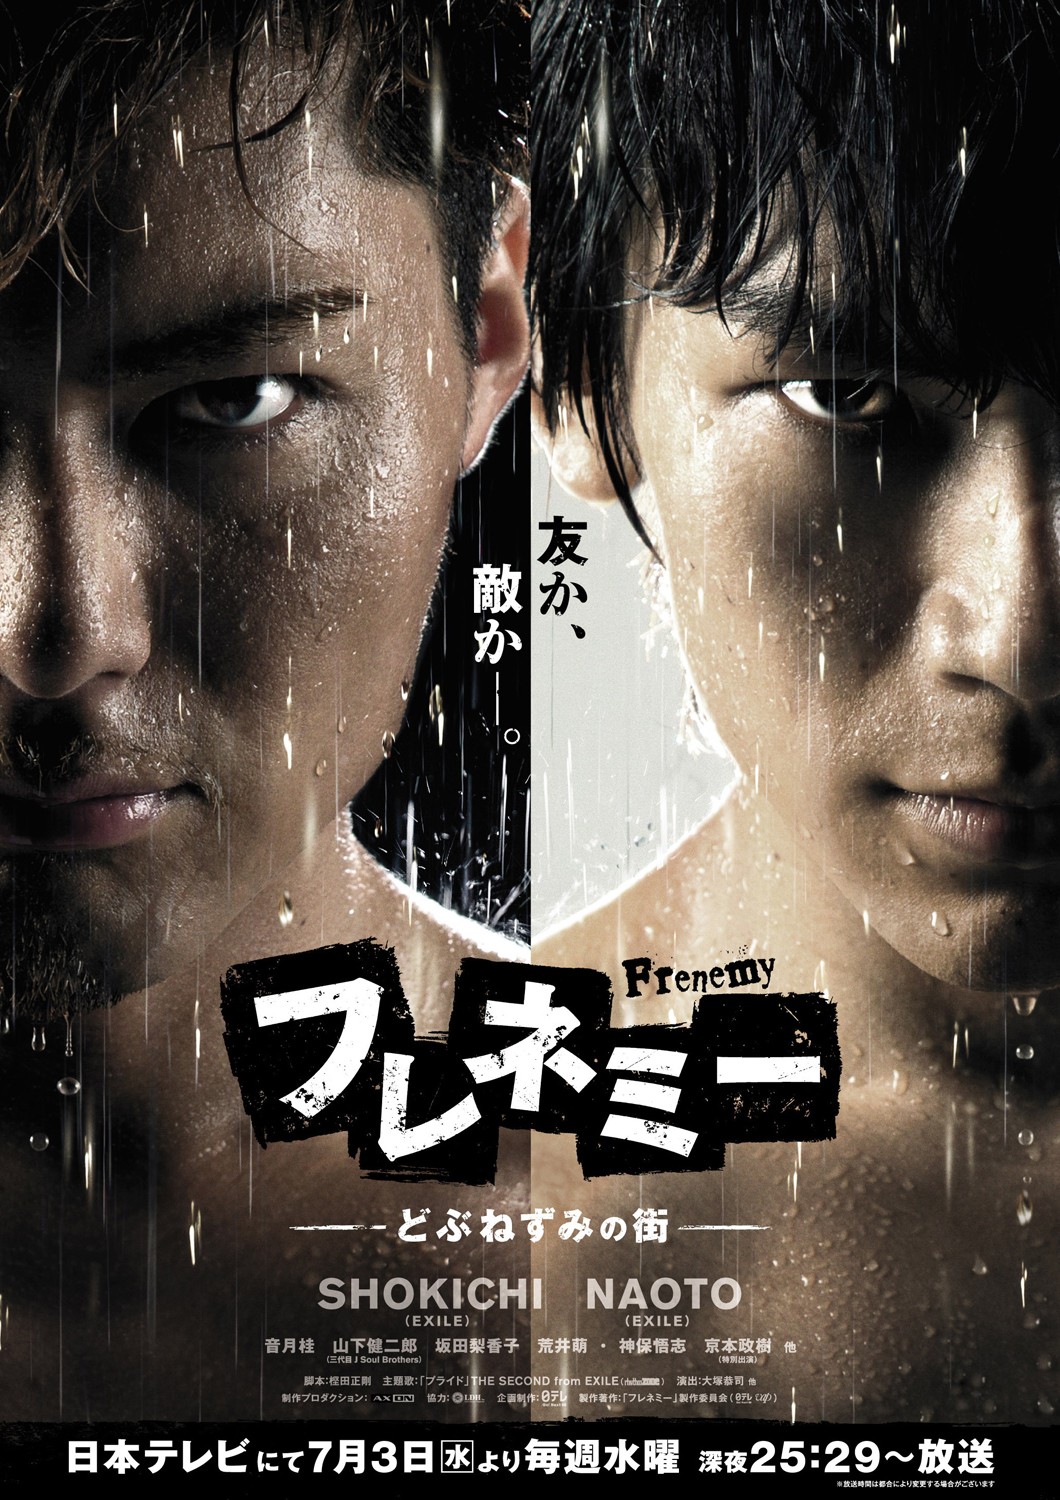 Extra Large Movie Poster Image for Frenemy - Dobunezumi no Machi 